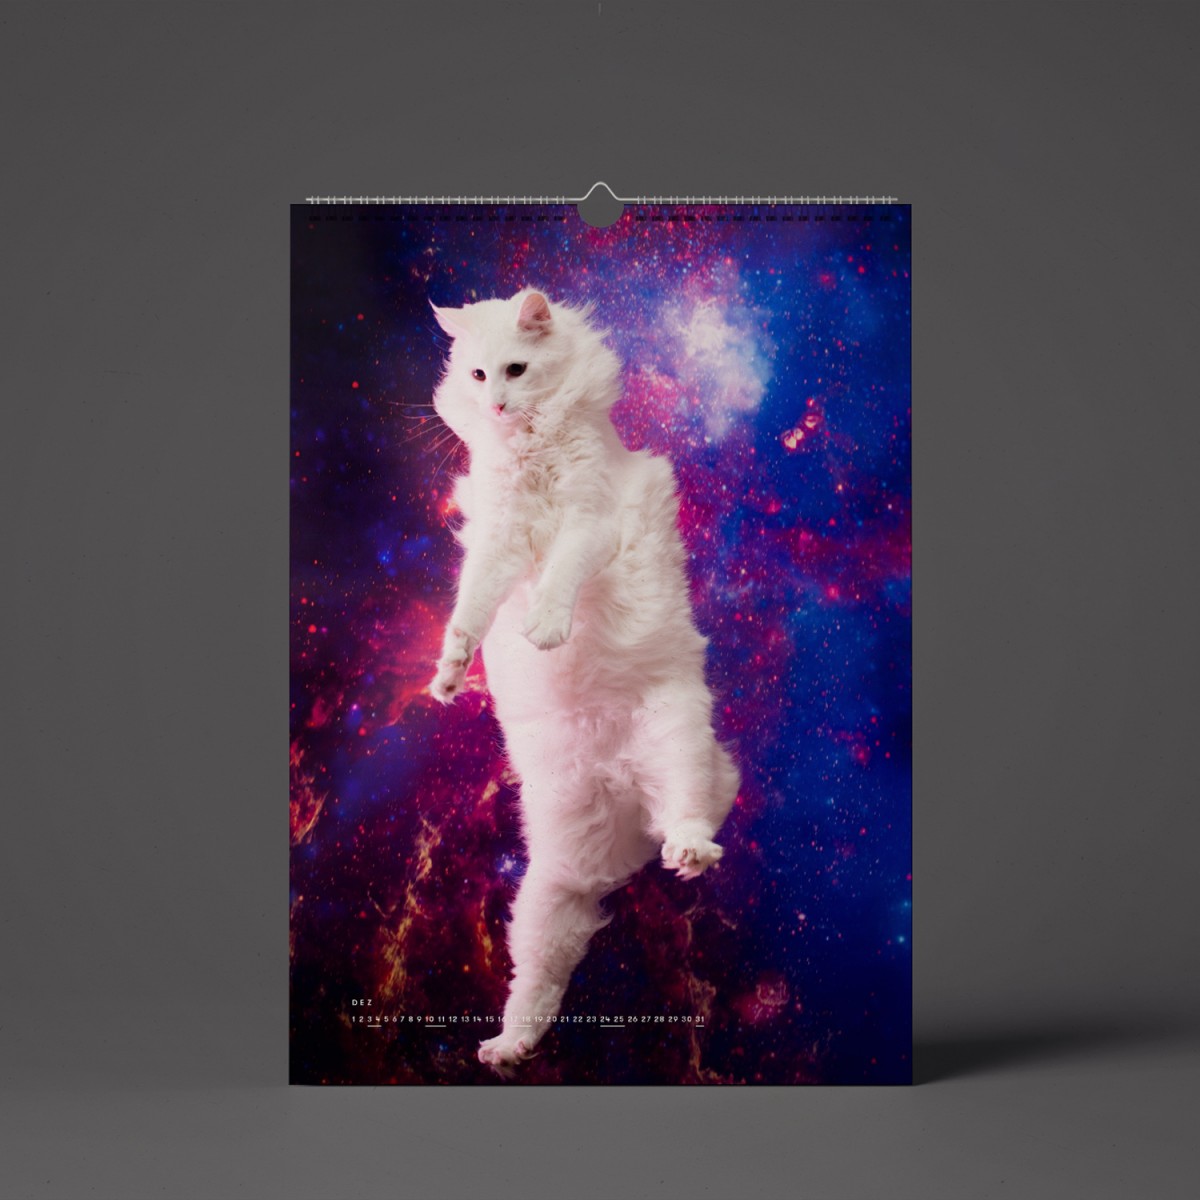 "CATS IN SPACE" Kalender 2022 (Vorbestellung)